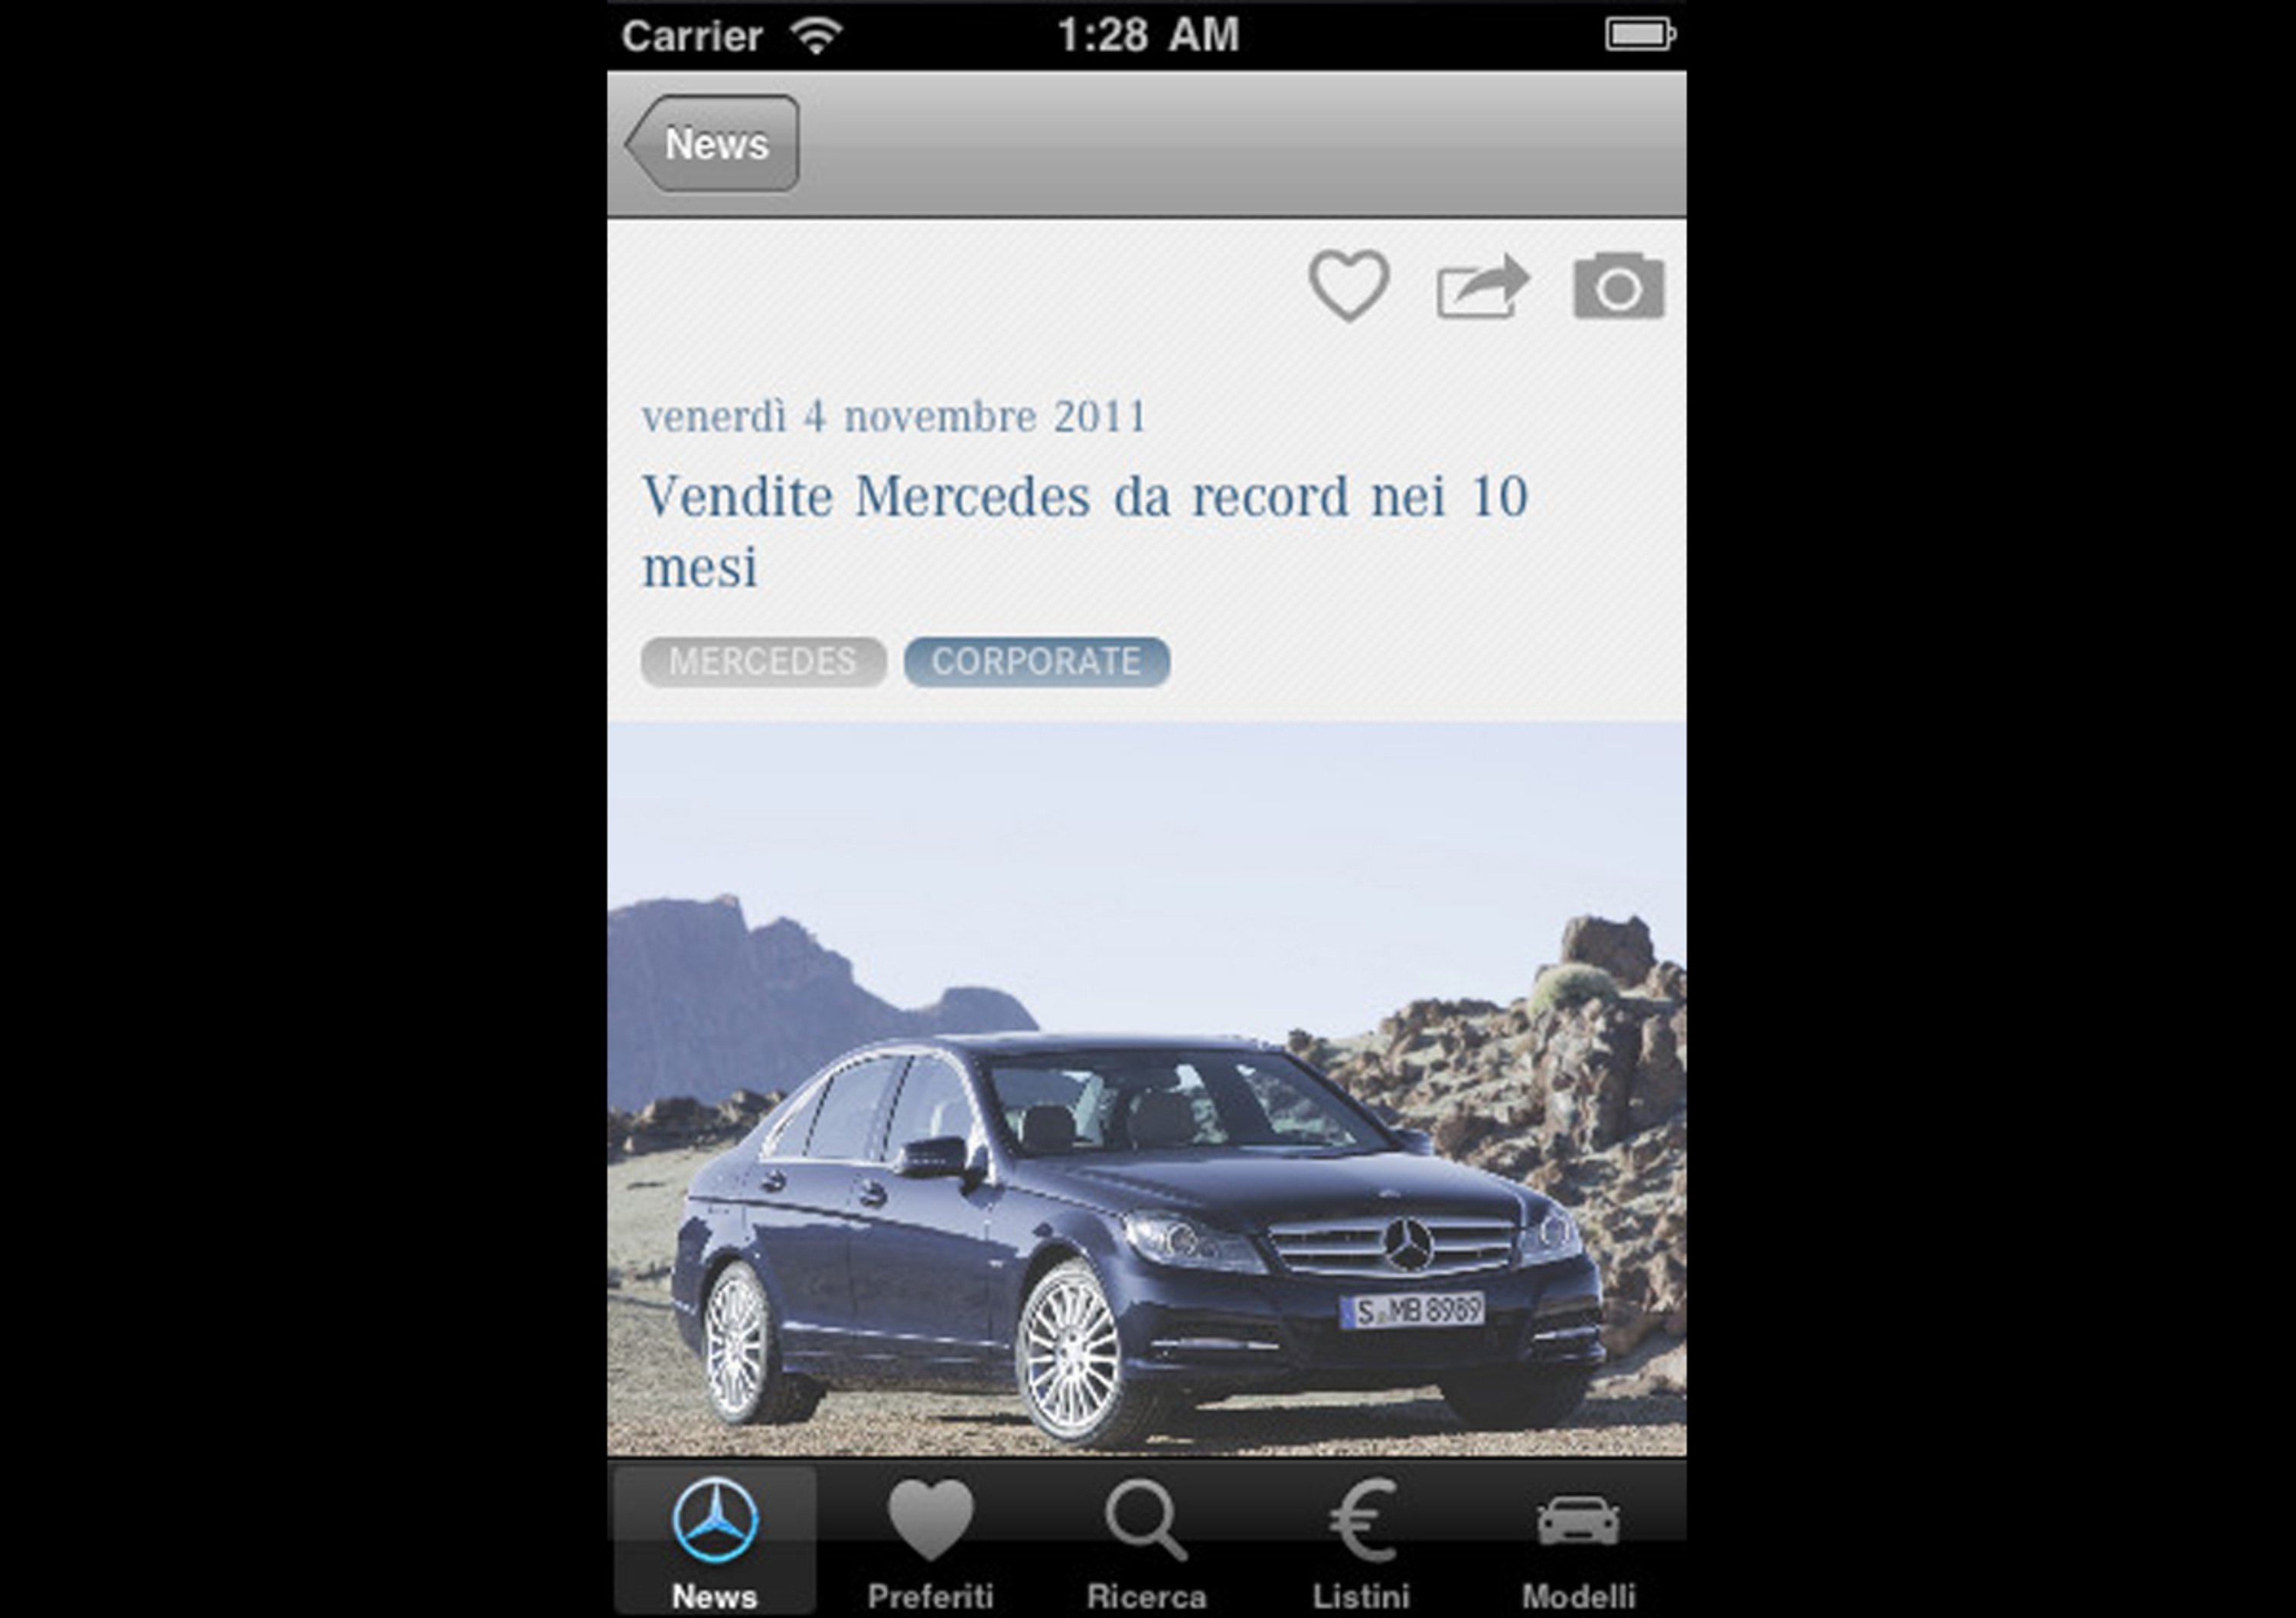 MercedesNews: la nuova App per gli amanti della Stella